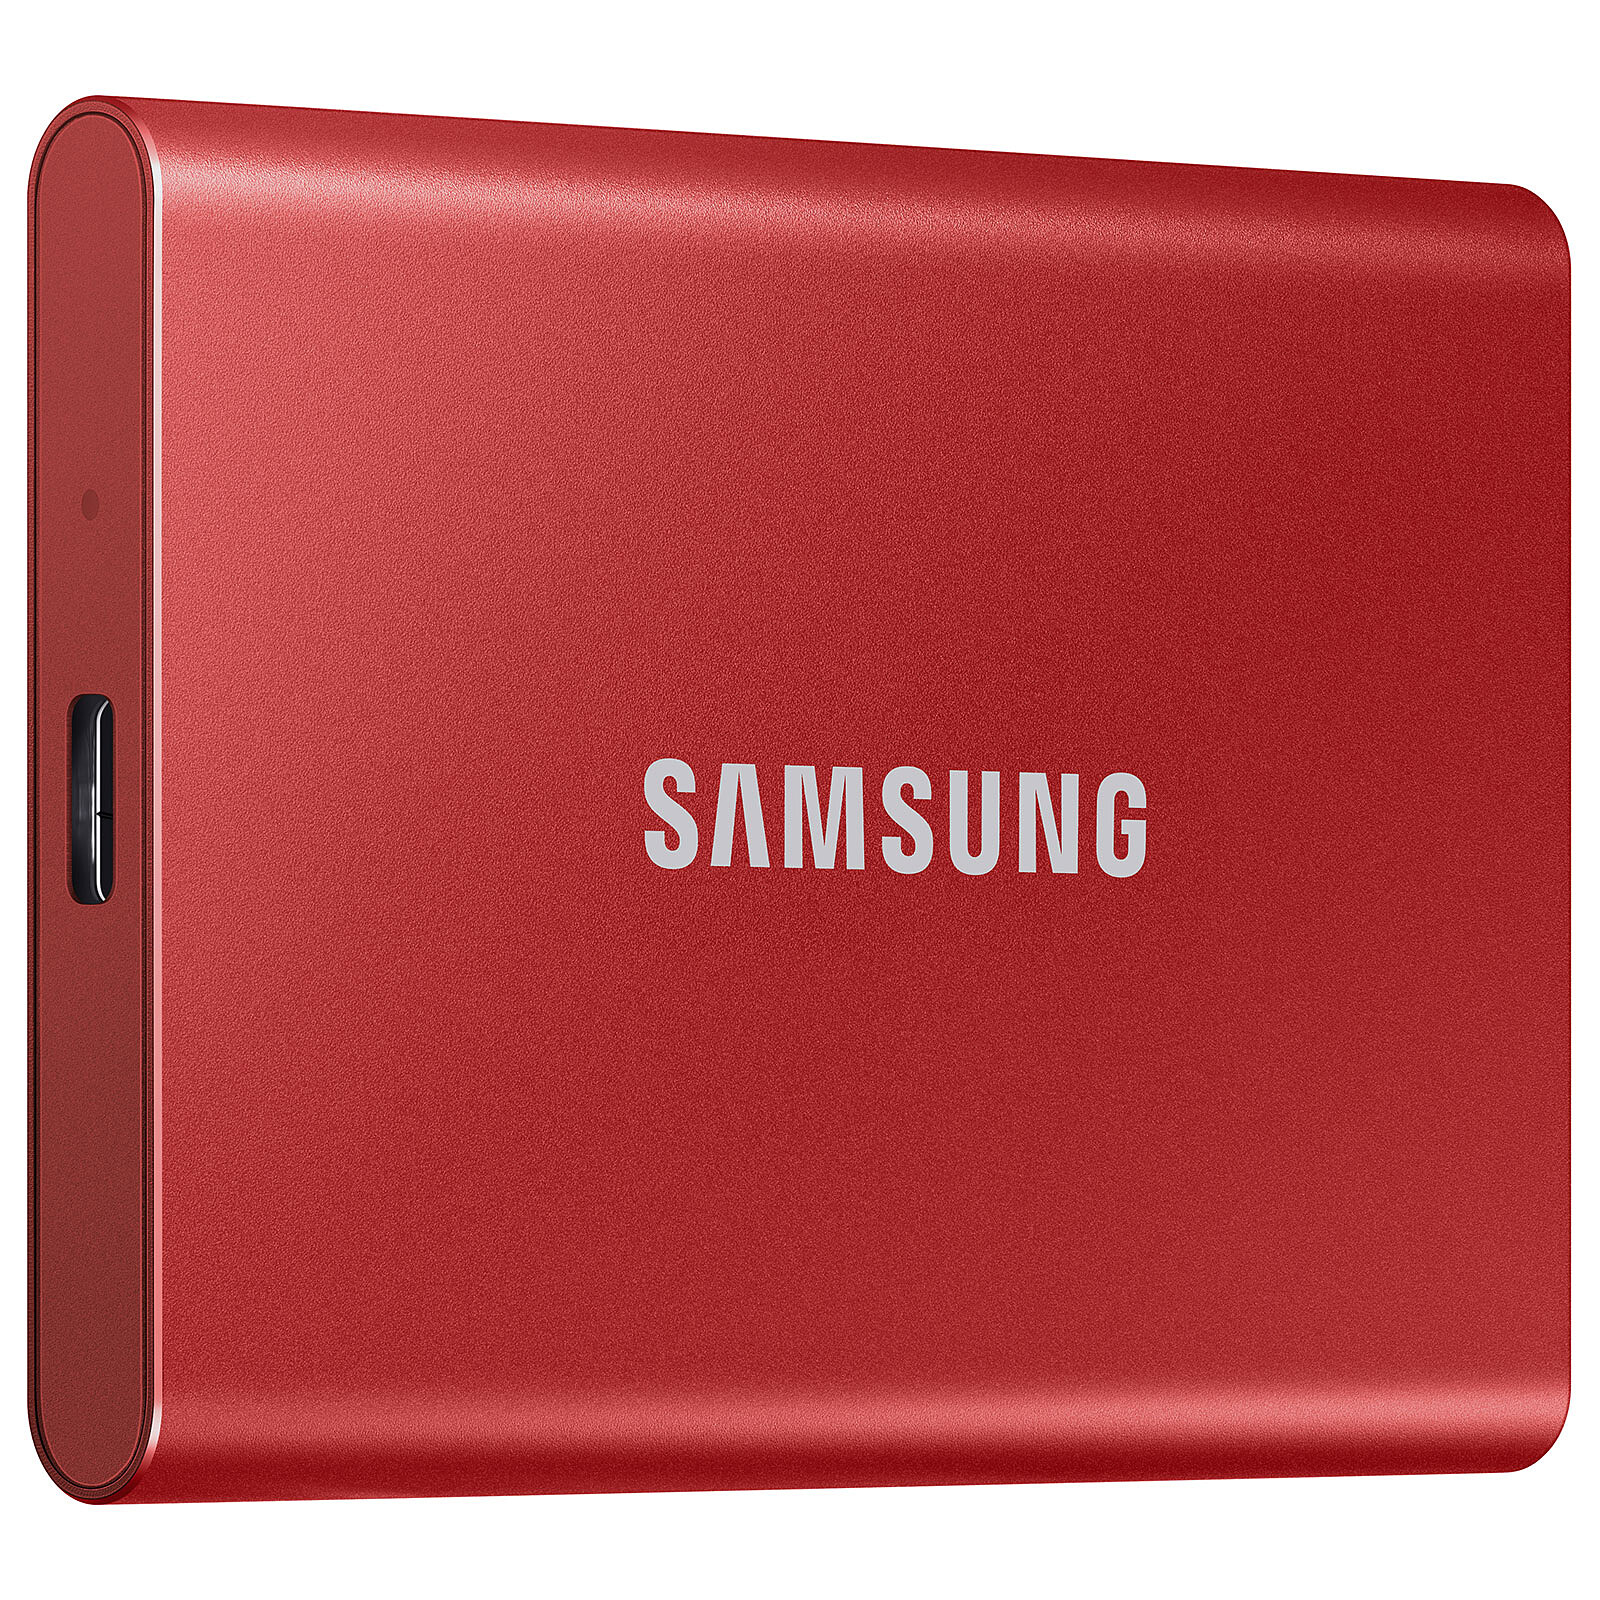 Samsung SSD portatile T7 1Tb Rosso - Hard disk esterno - Garanzia